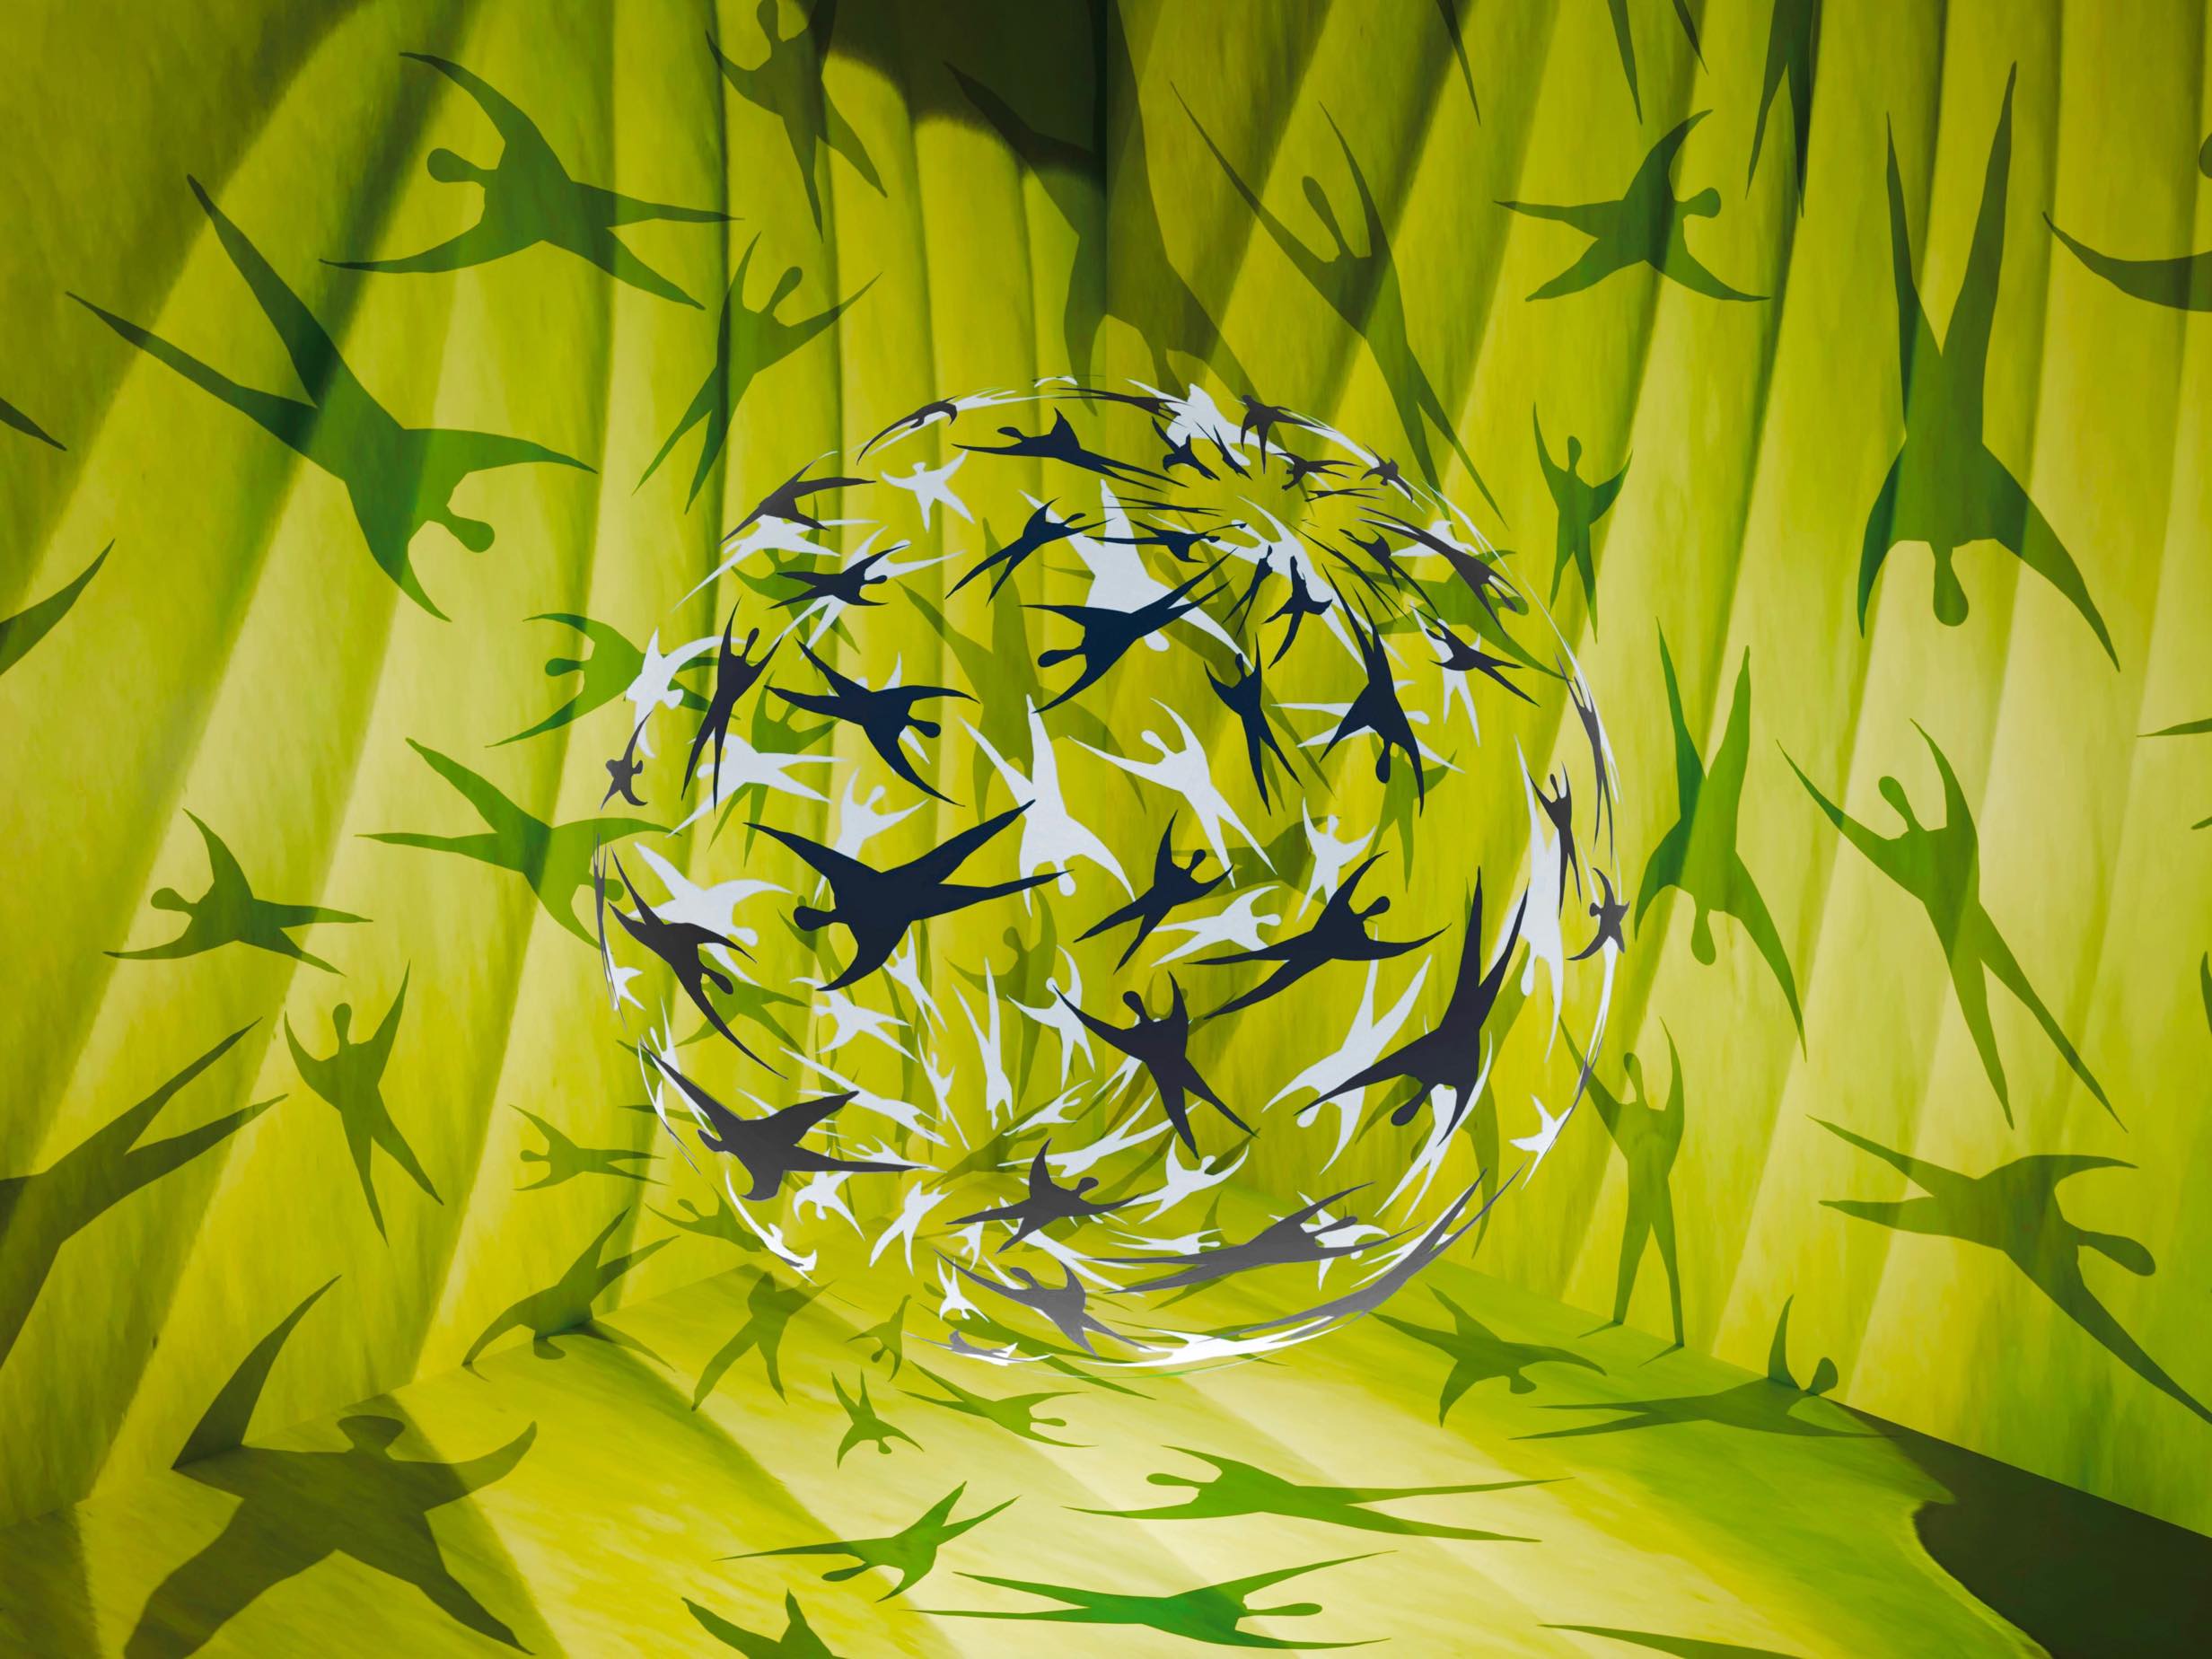 Atsushigraphのグラフィックアート「Fresh Green Gathering」。鮮やかな緑の葉をコラージュした背景の前で、円を描くようにたゆたう人々。そして彼らの影が放射状に周囲へと伸びていく様子が描かれています。